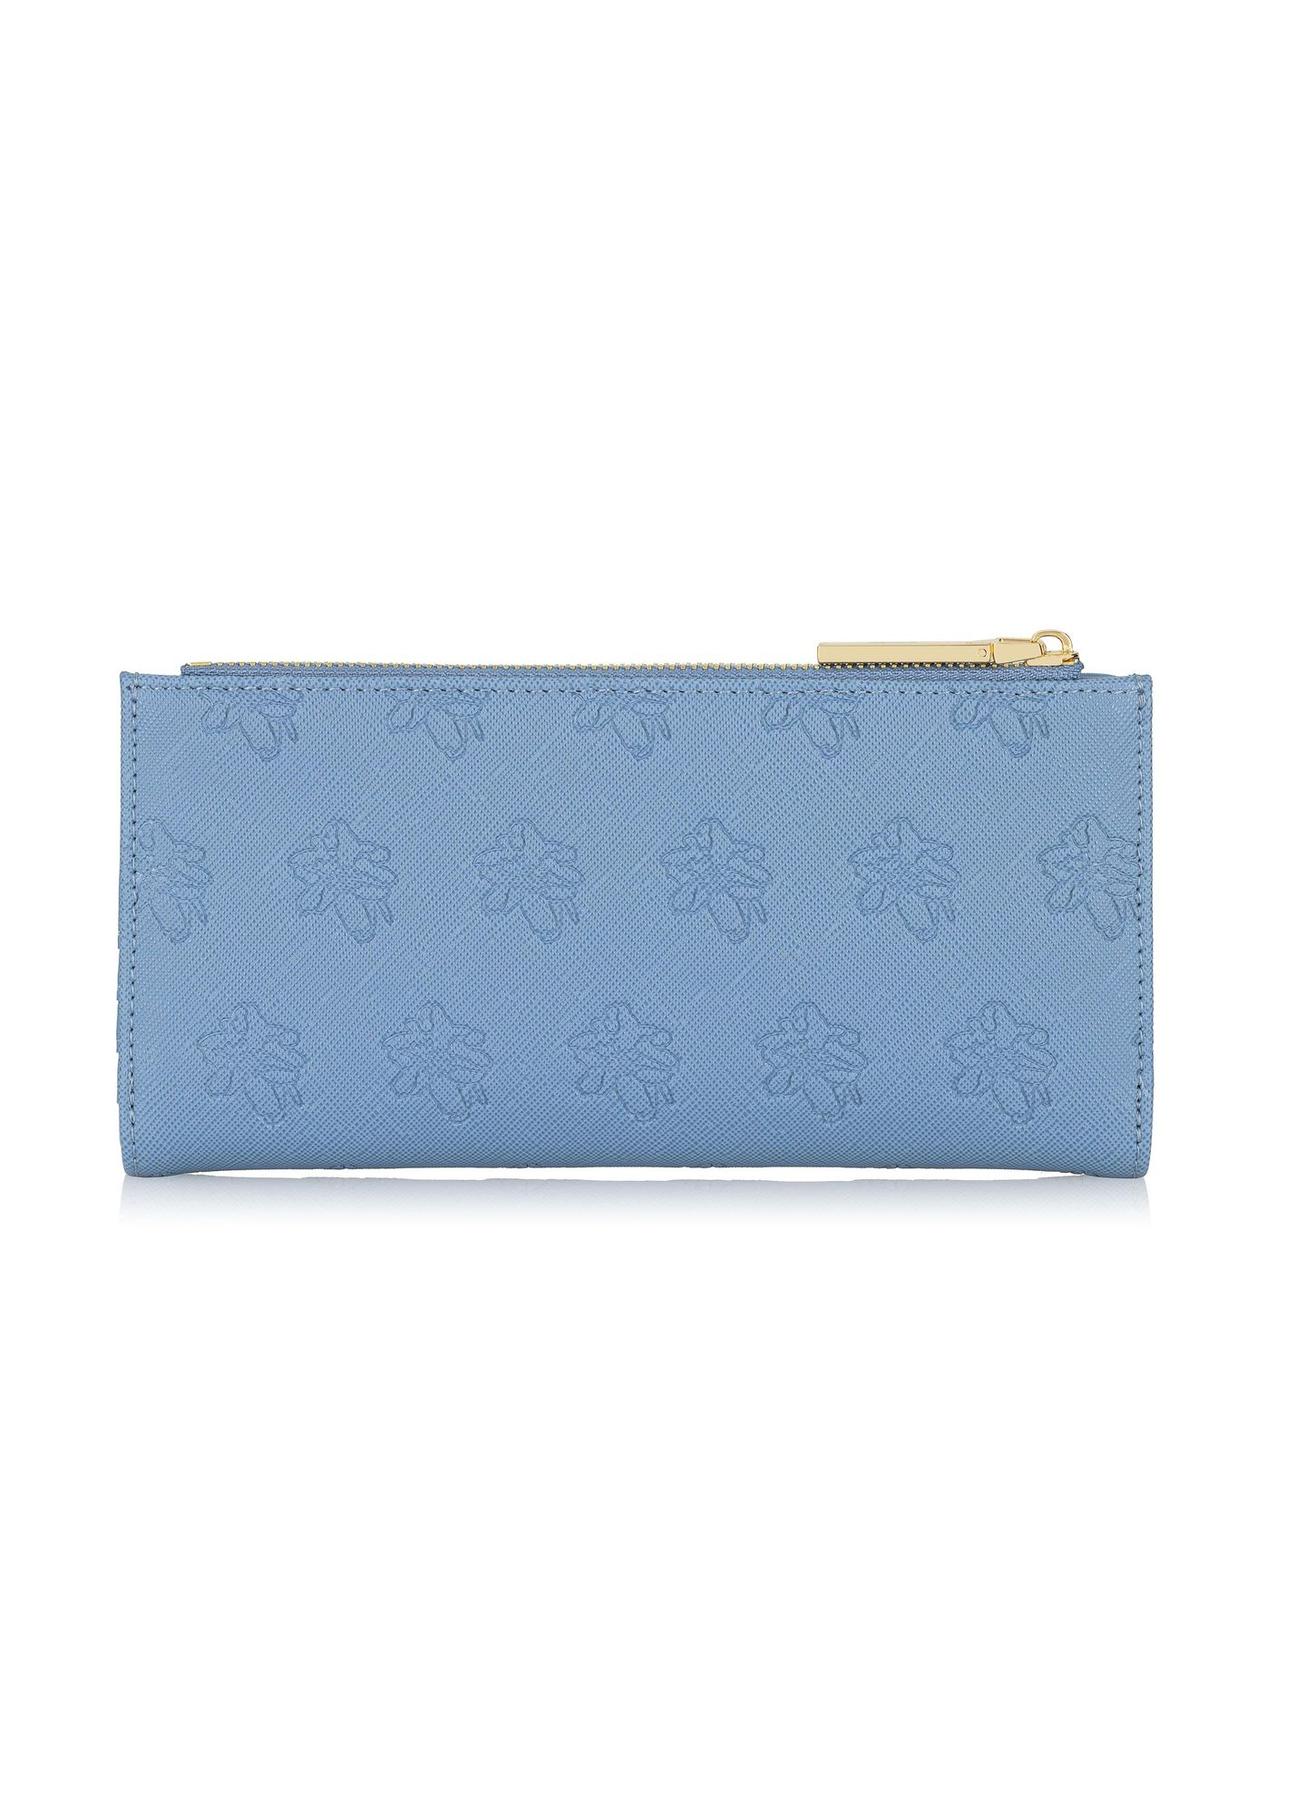 Błękitny portfel damski z tłoczeniem POREC-0323-61(W23)